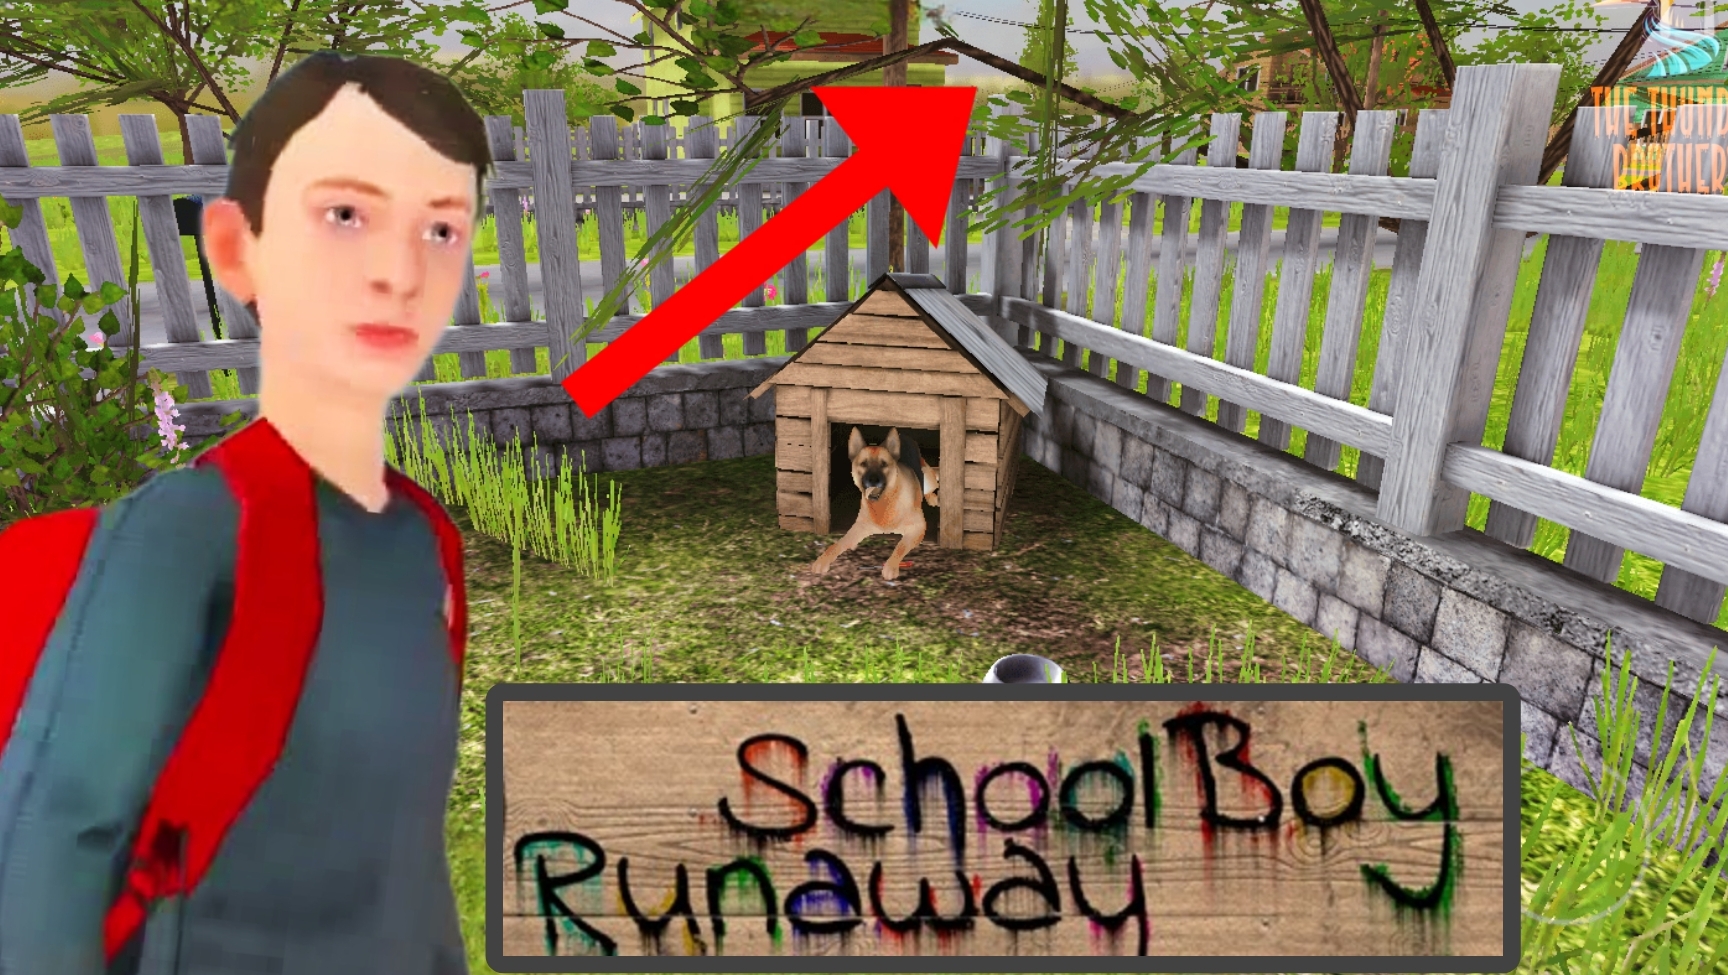 Залез на ДЕРЕВО и сбежал от родителей ➣ SchoolBoy Runaway